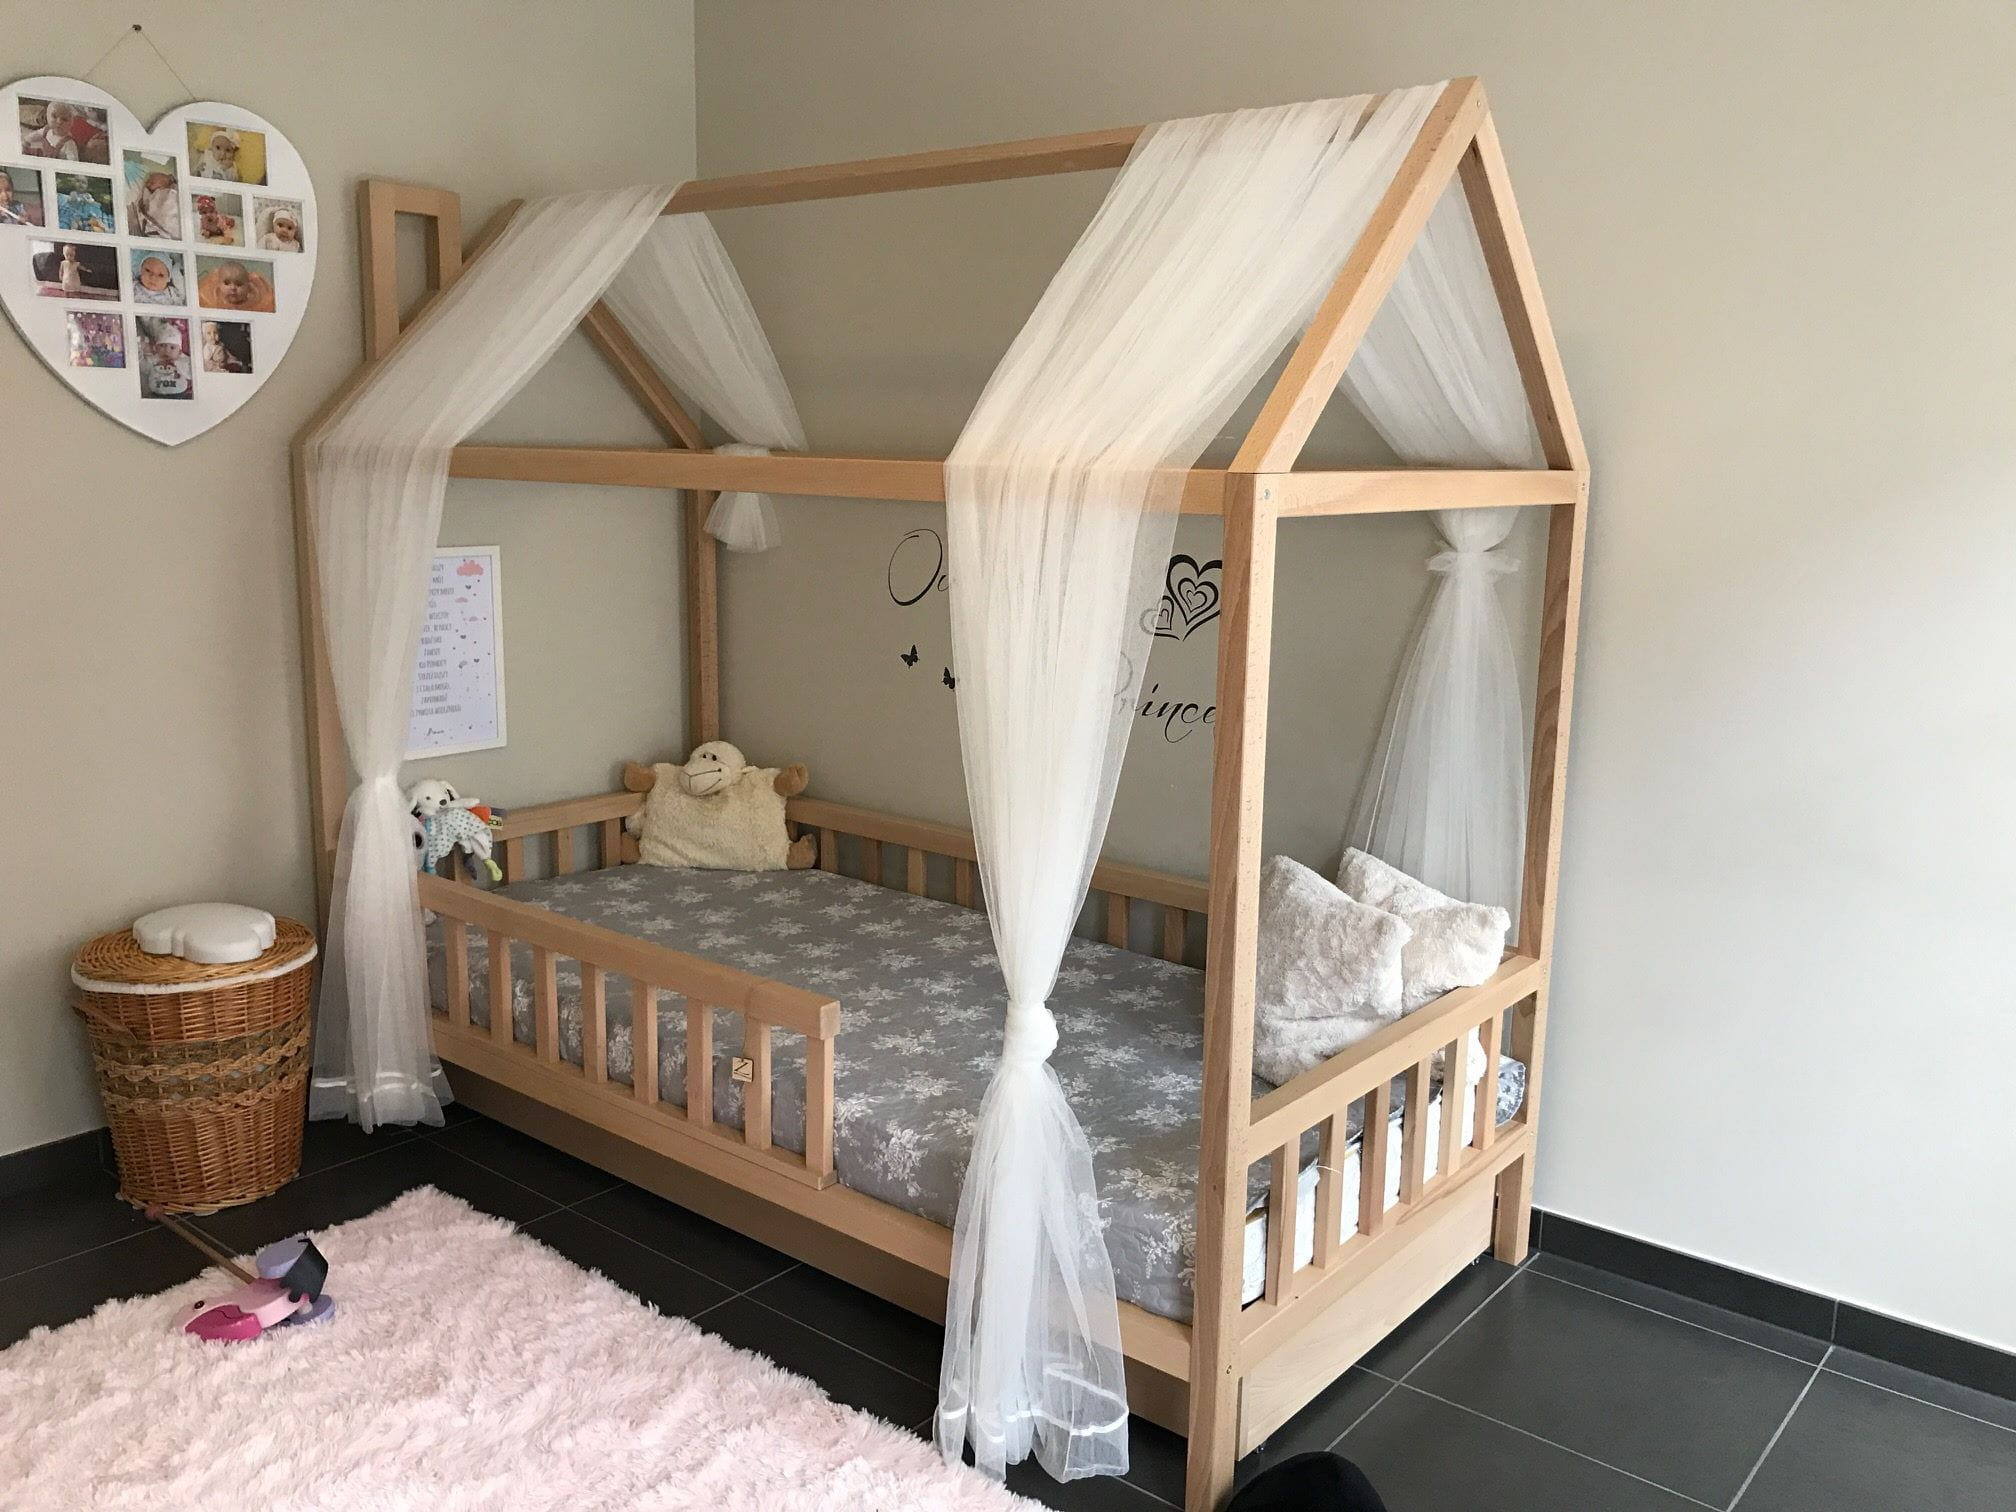 кровать домик для детей в интерьере